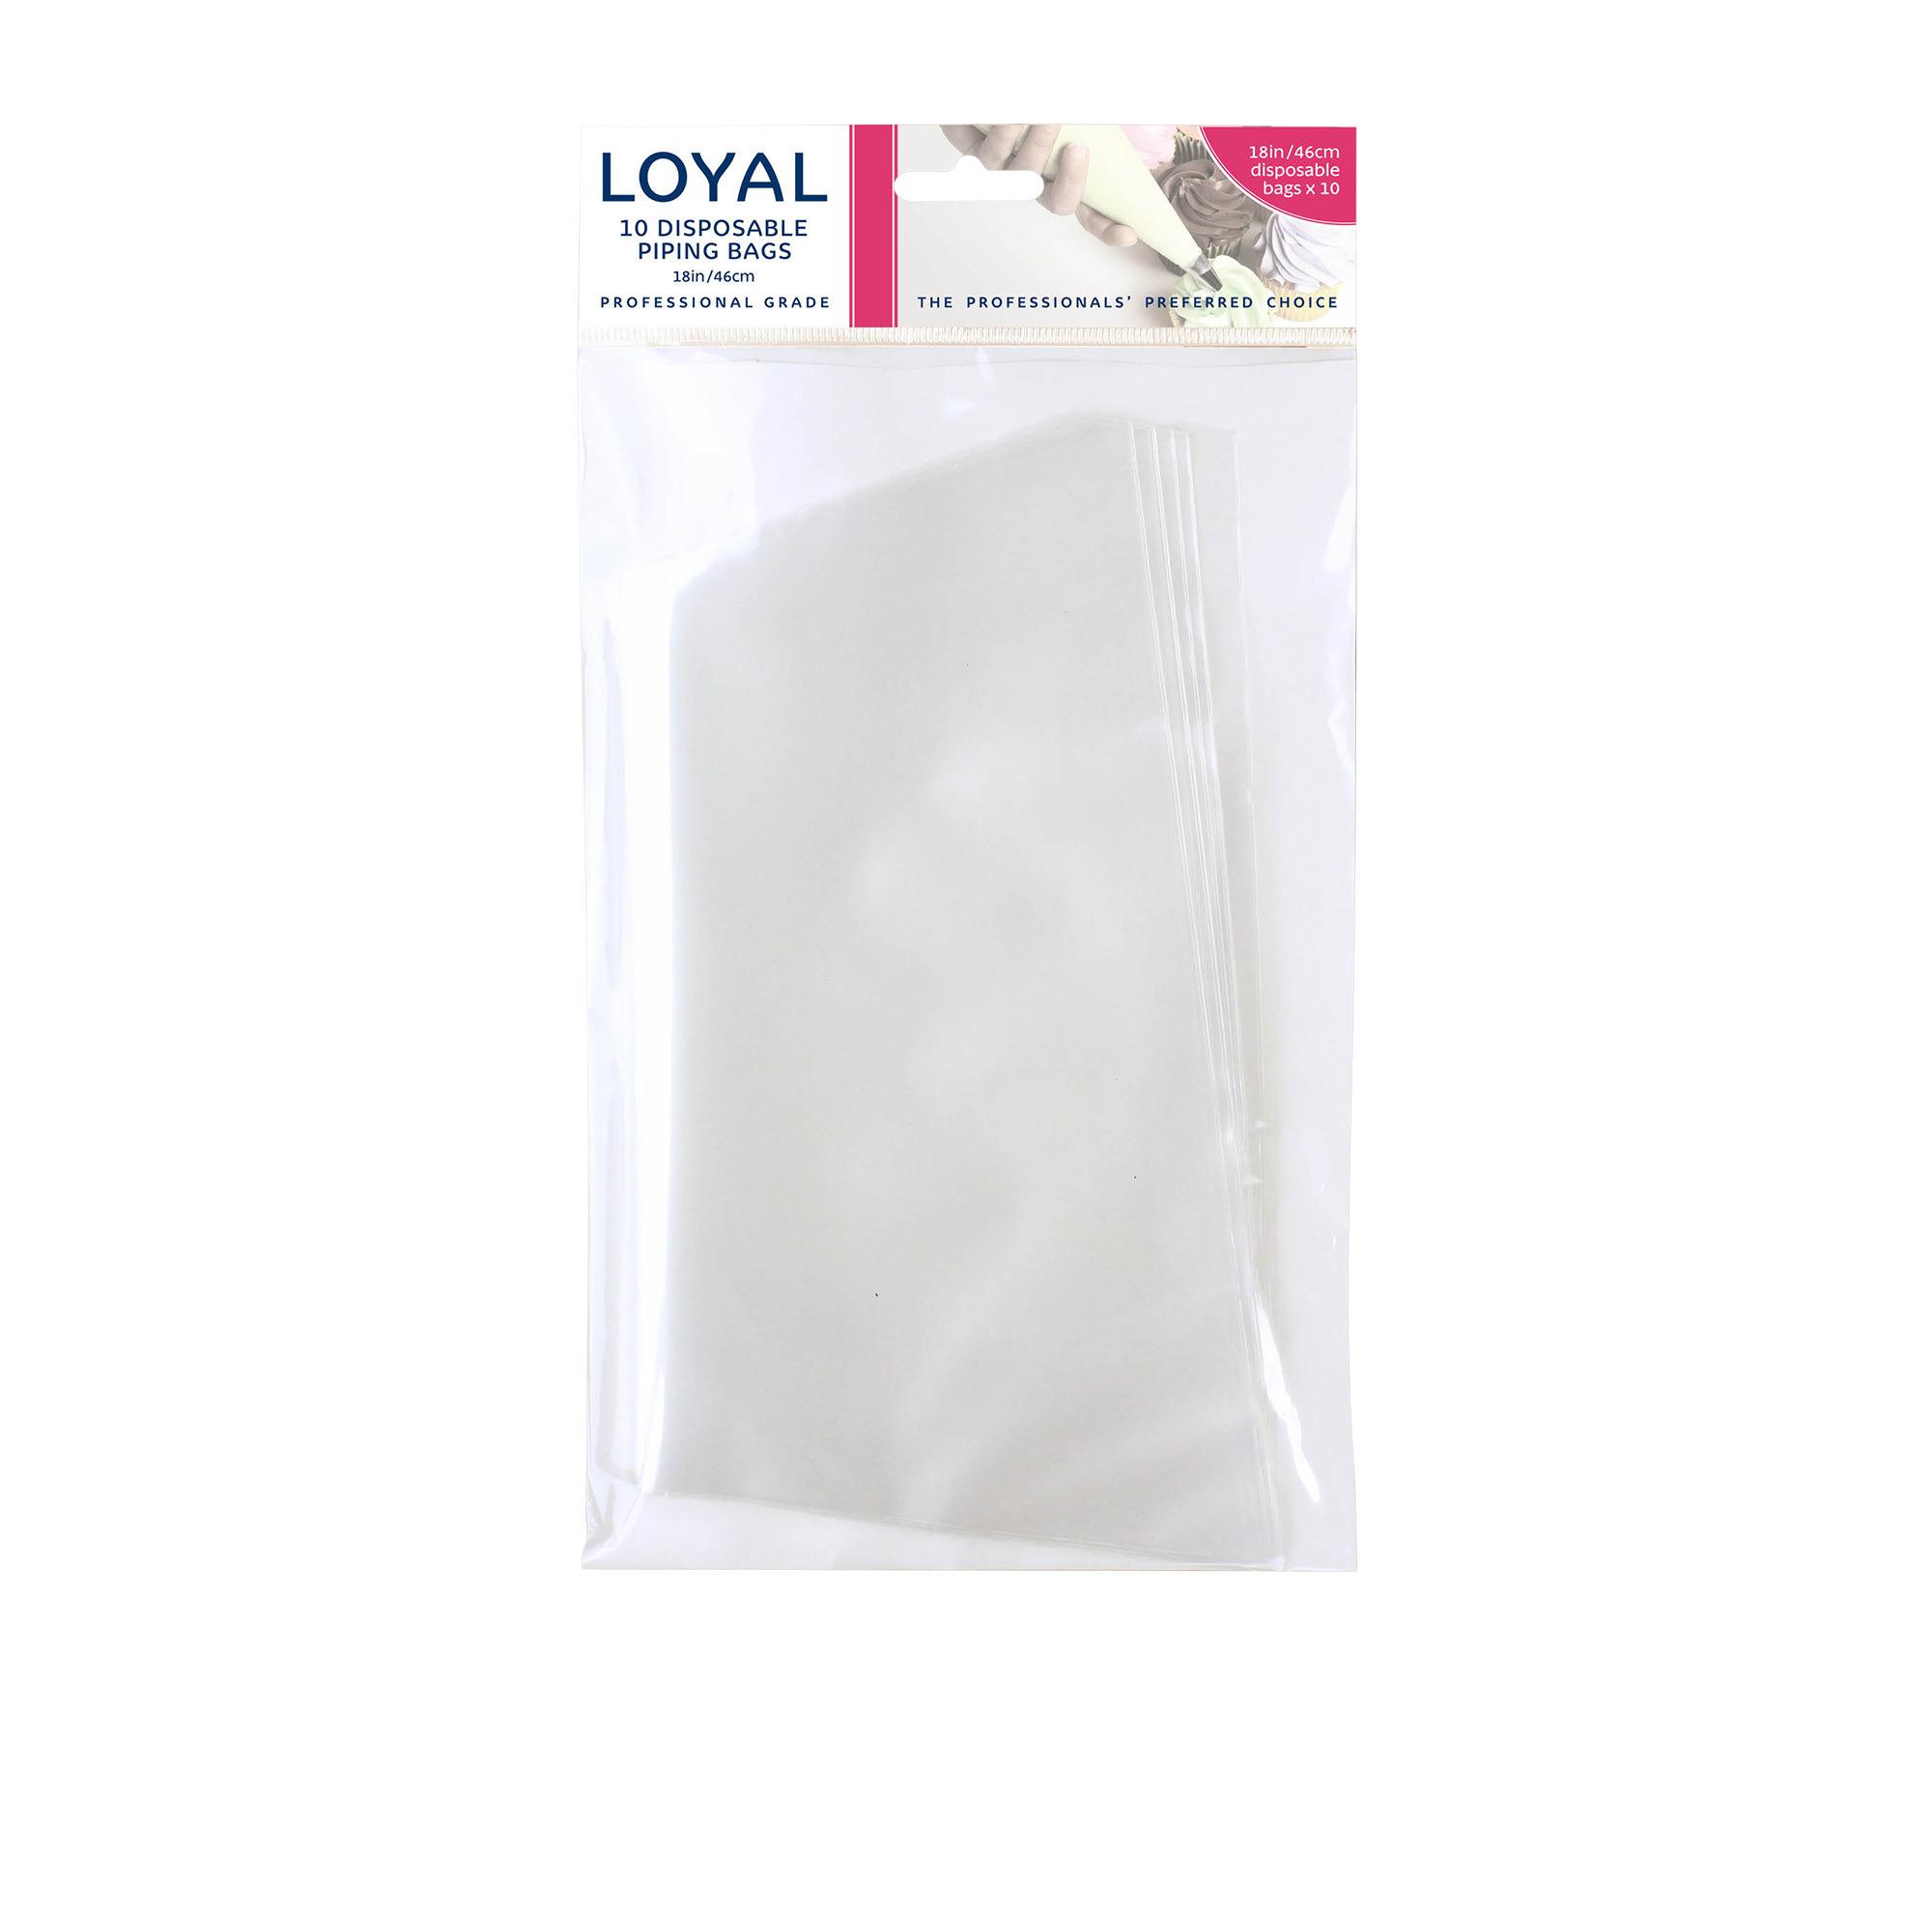 Loyal 10pk Disposable Piping Bag 46cm Image 1